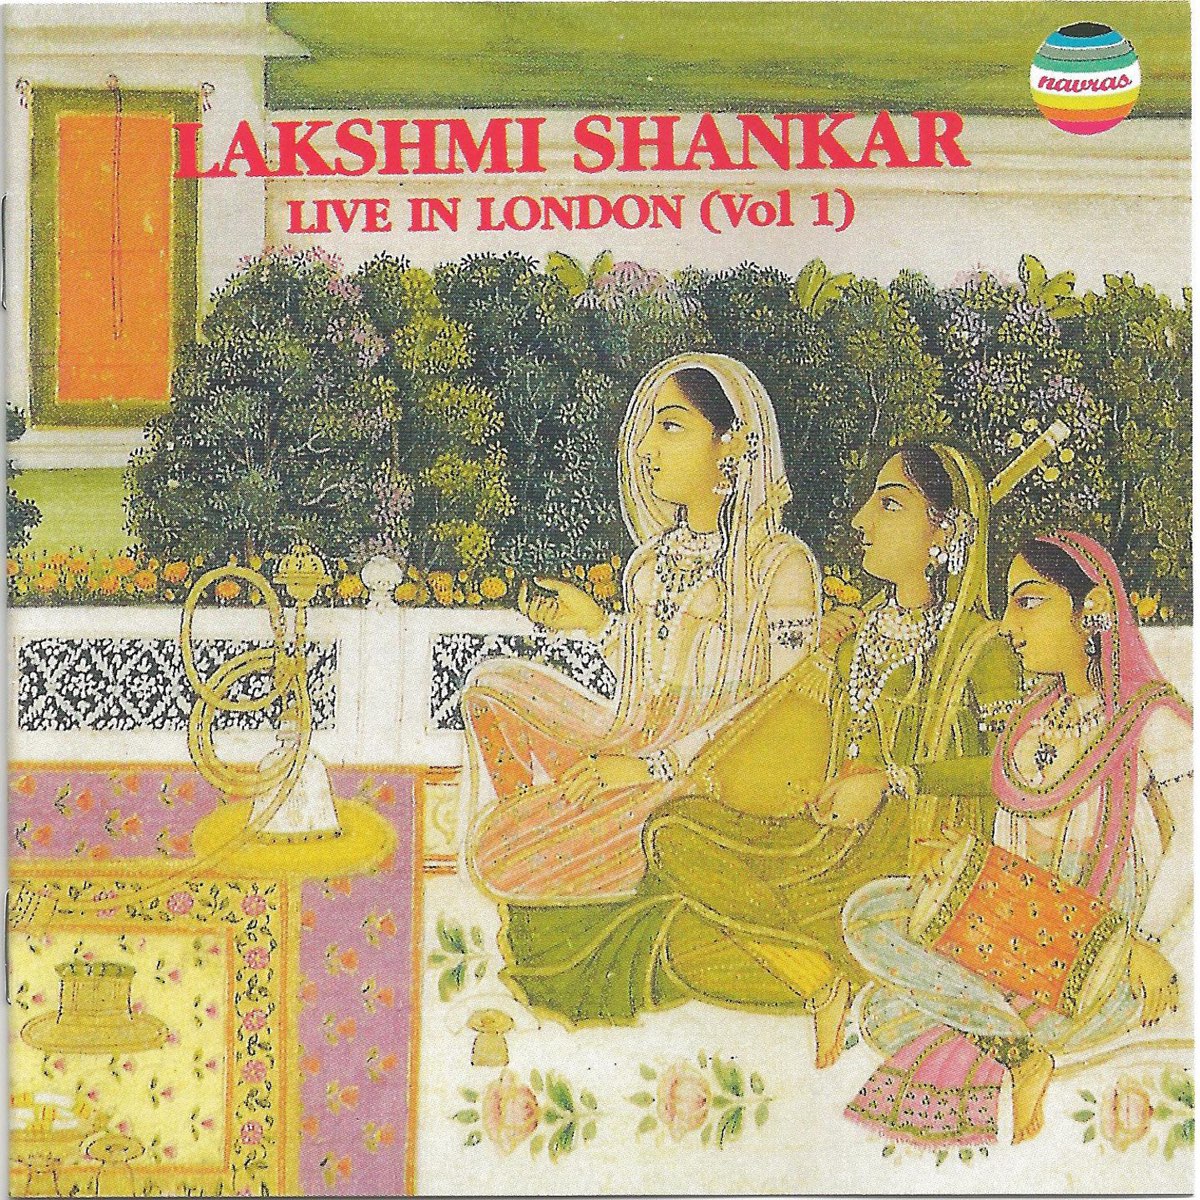 Лакшми бай. Thumri. Shankar "Songs for everyone".